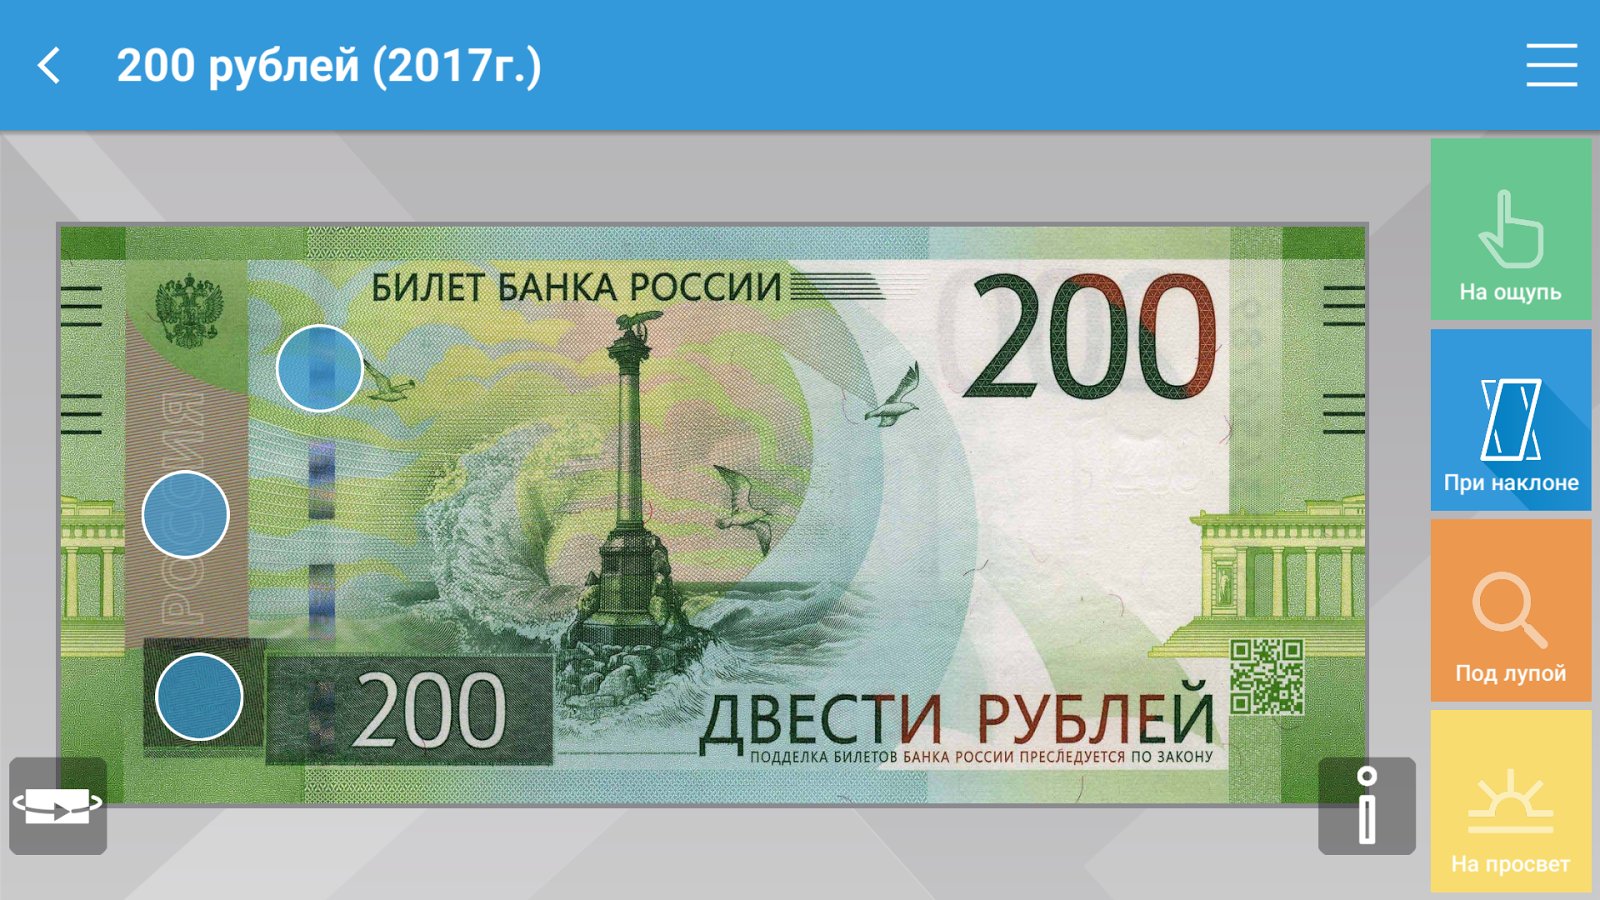 200 рублей словами. Купюра 200 рублей. 200 Рублей купюра 2017. Двести рублей 2017. 200 Рублей банкнота.